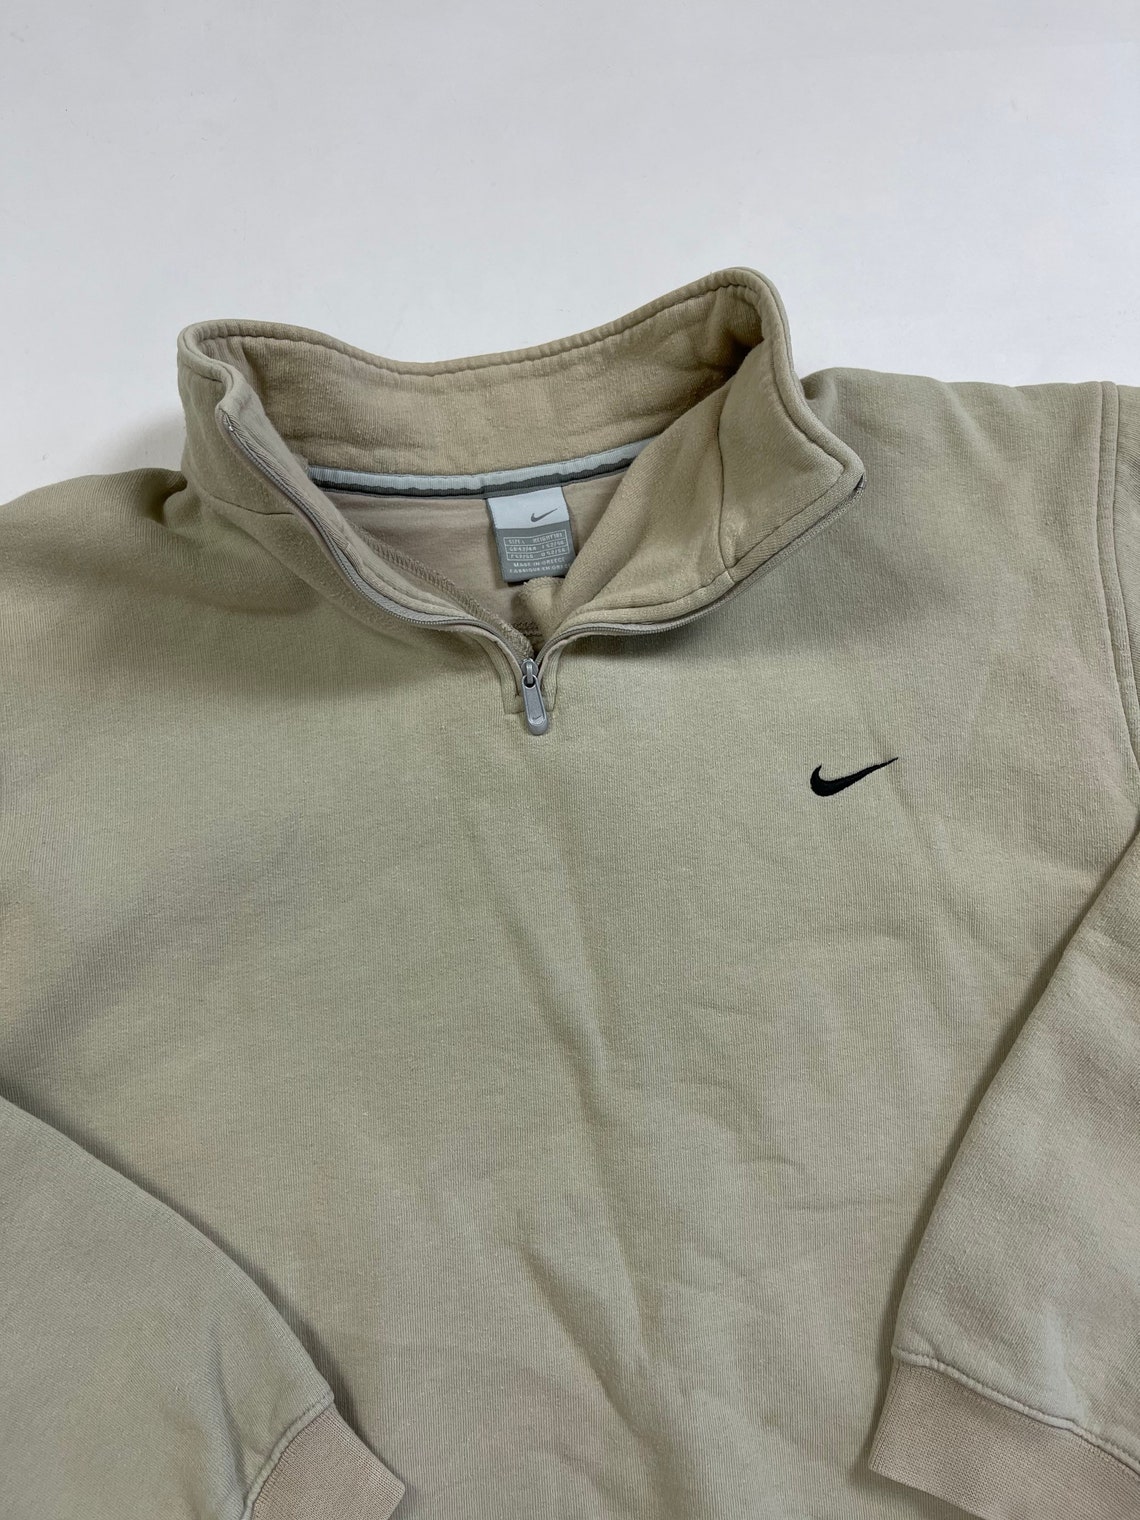 Nike vintage hoodie 90s rare beige chest logo sweatshirt | Etsy